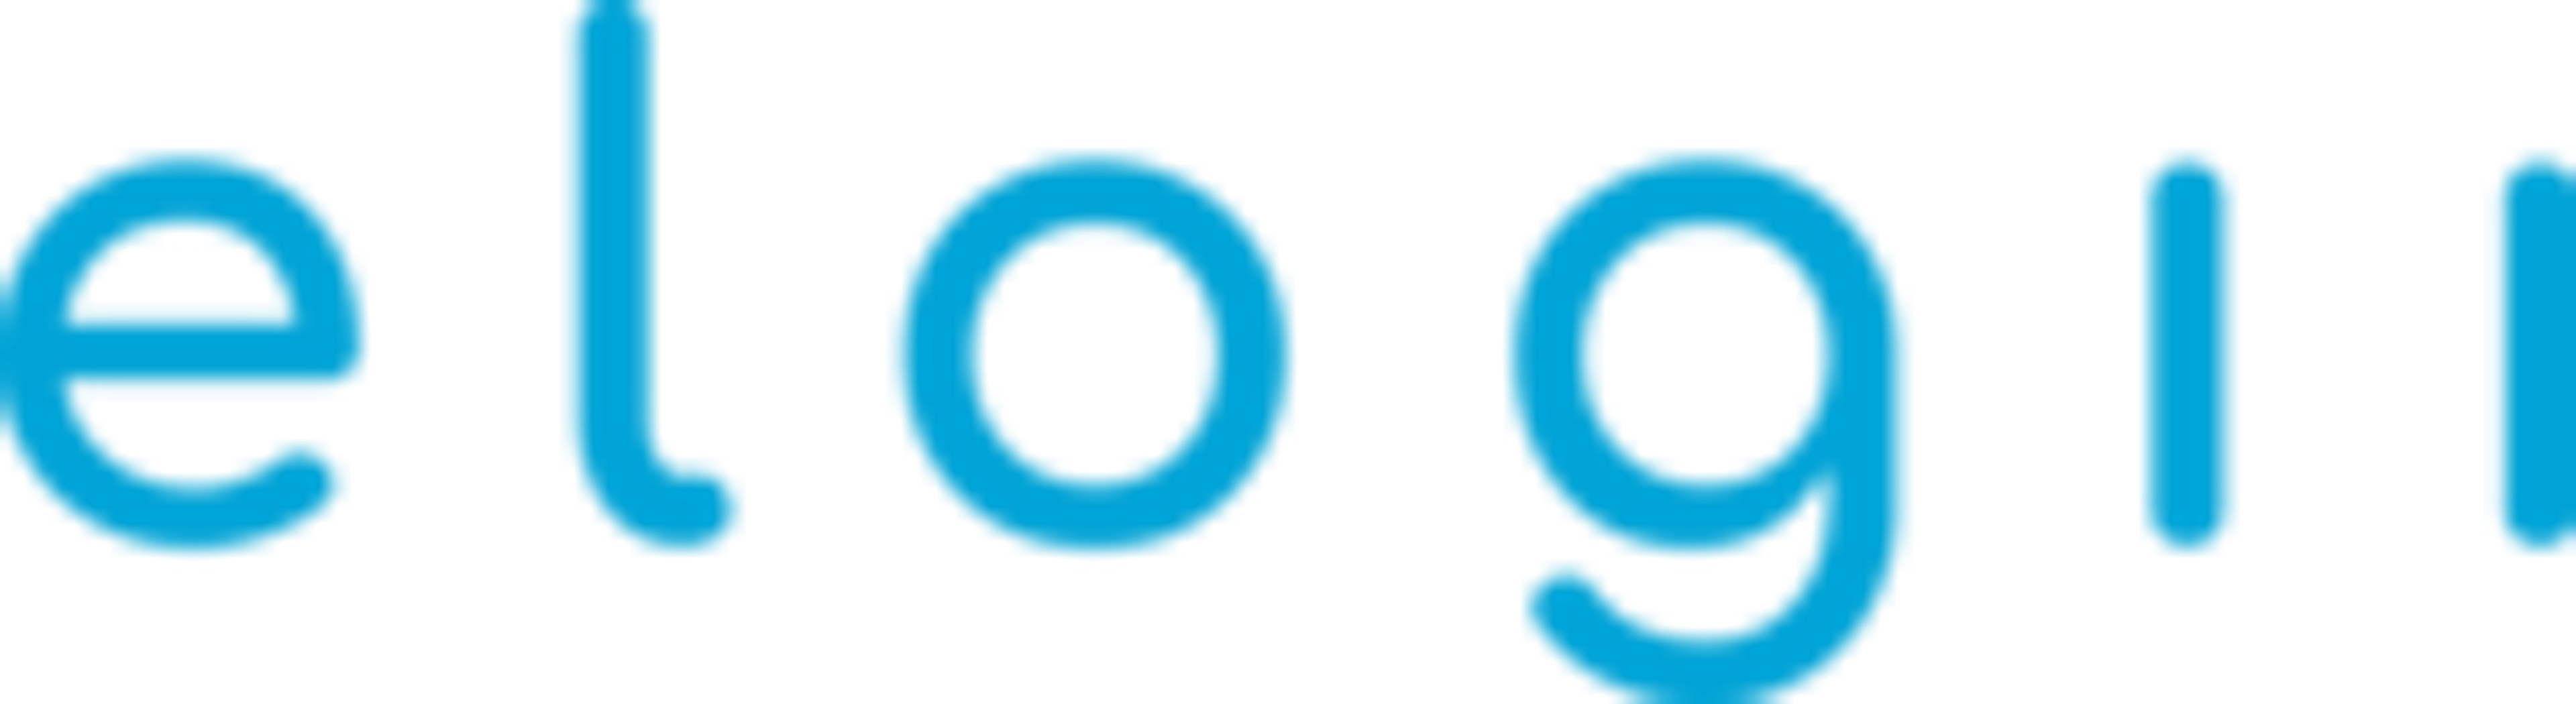 eLogii Logo